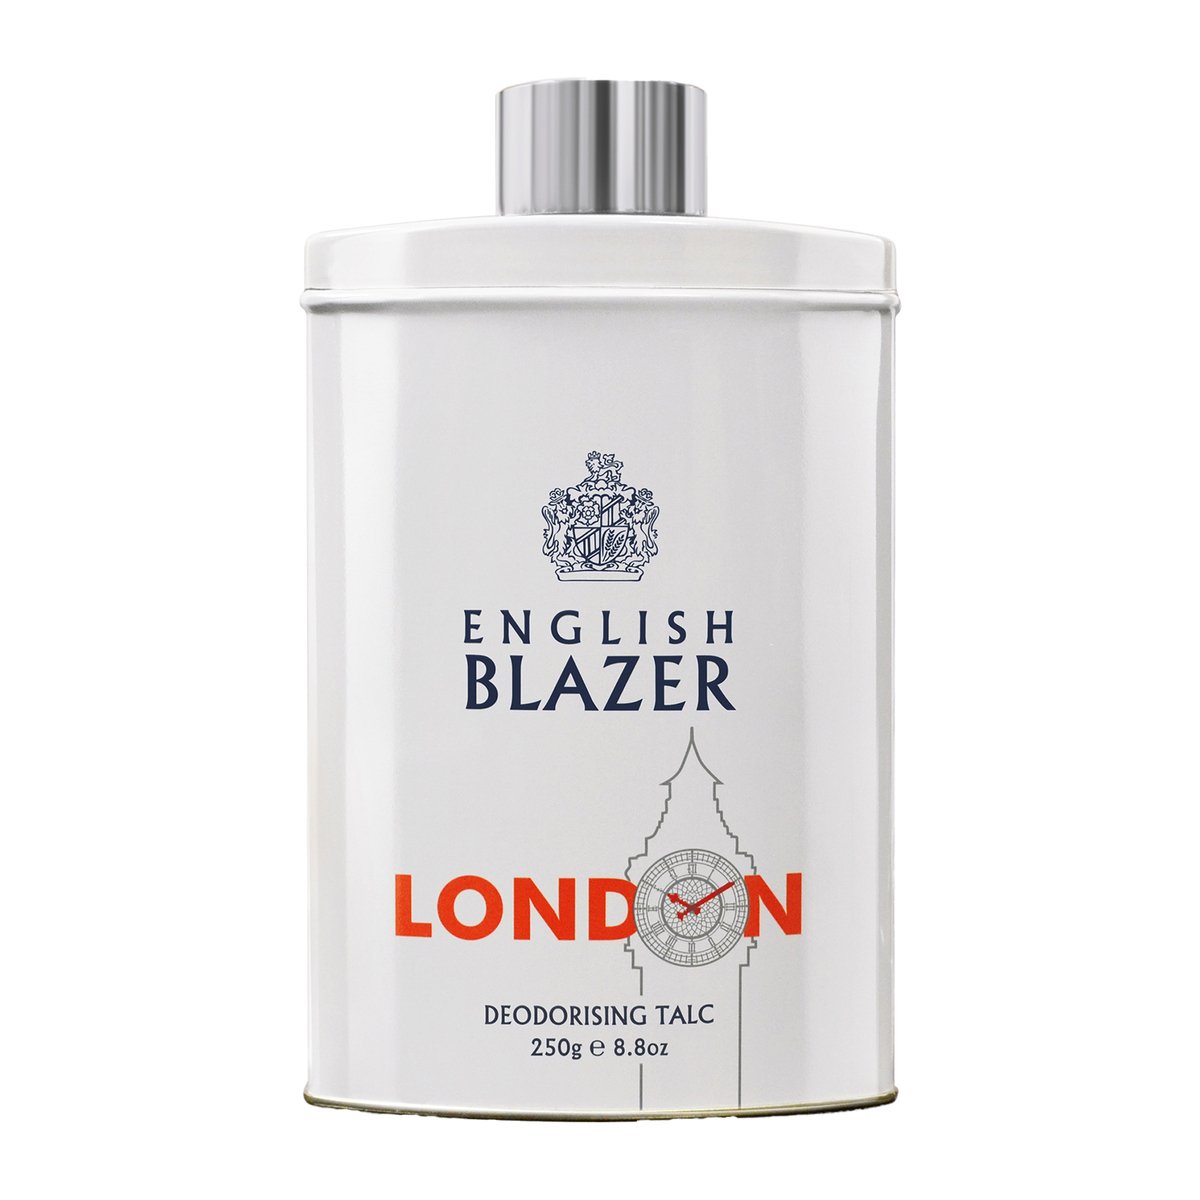 English Blazer London Deodorising Talc, 250 g